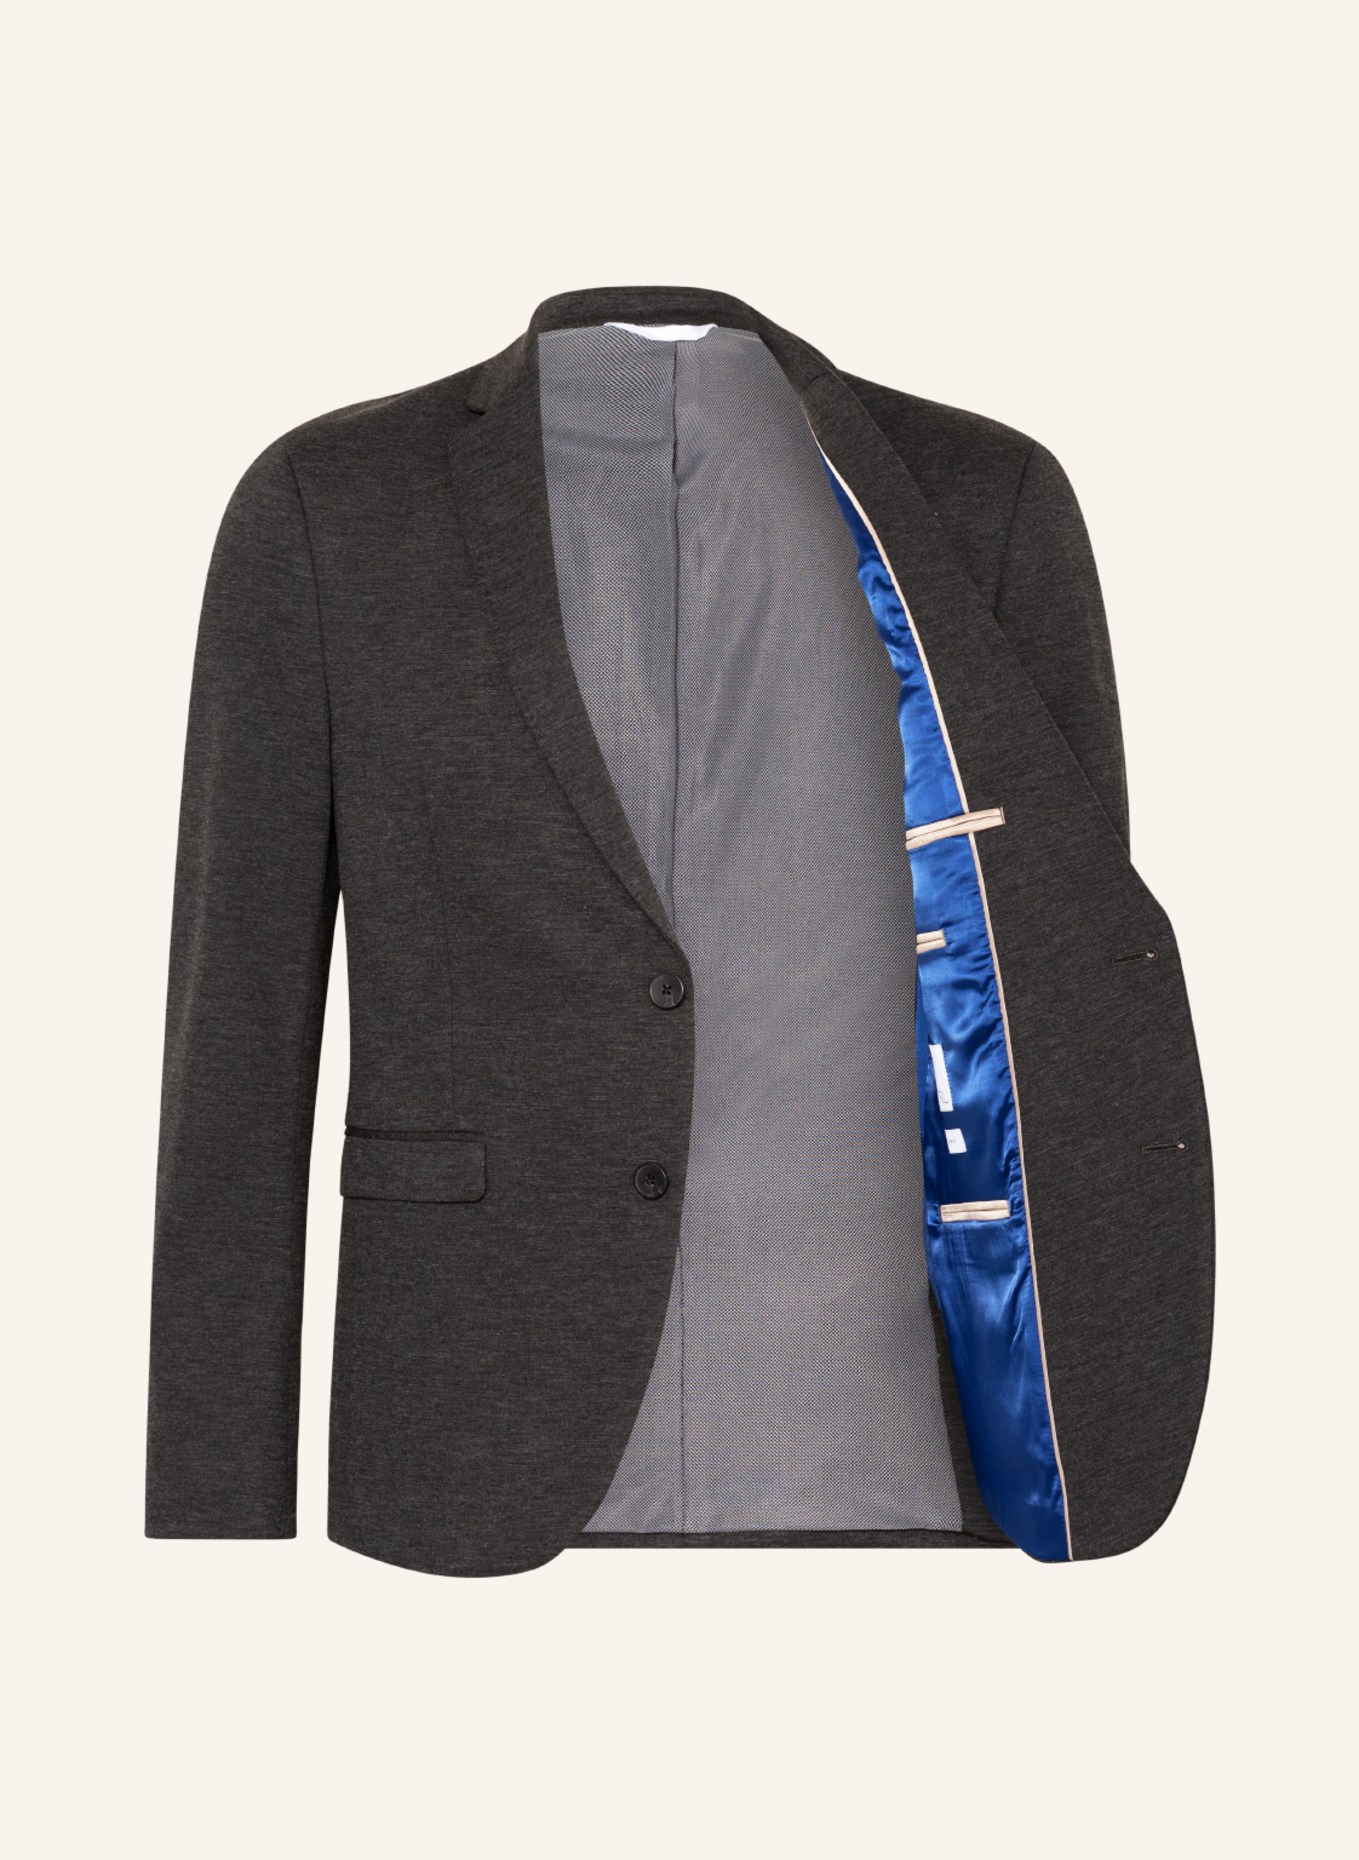 PAUL Suit jacket slim fit, Color: 750 Charcoal (Image 4)